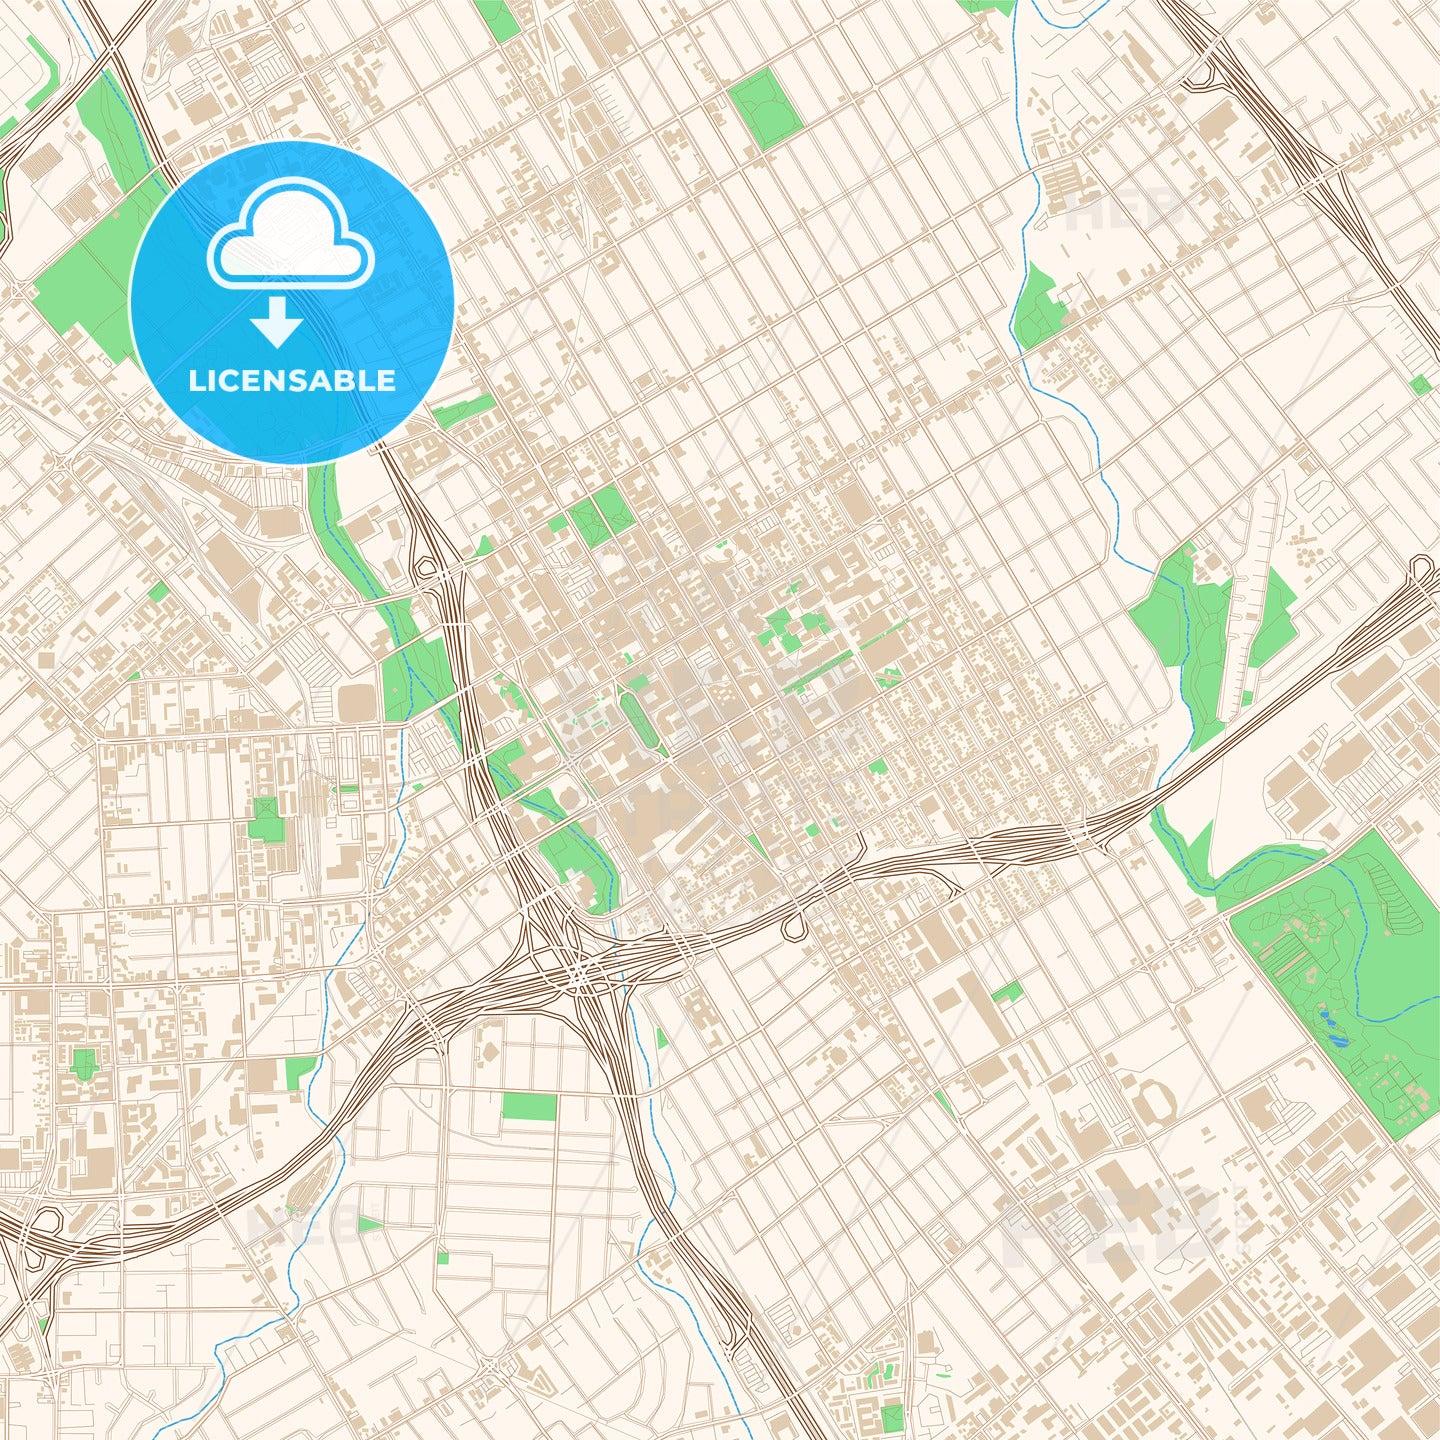 Street map of downtown San Jose, California